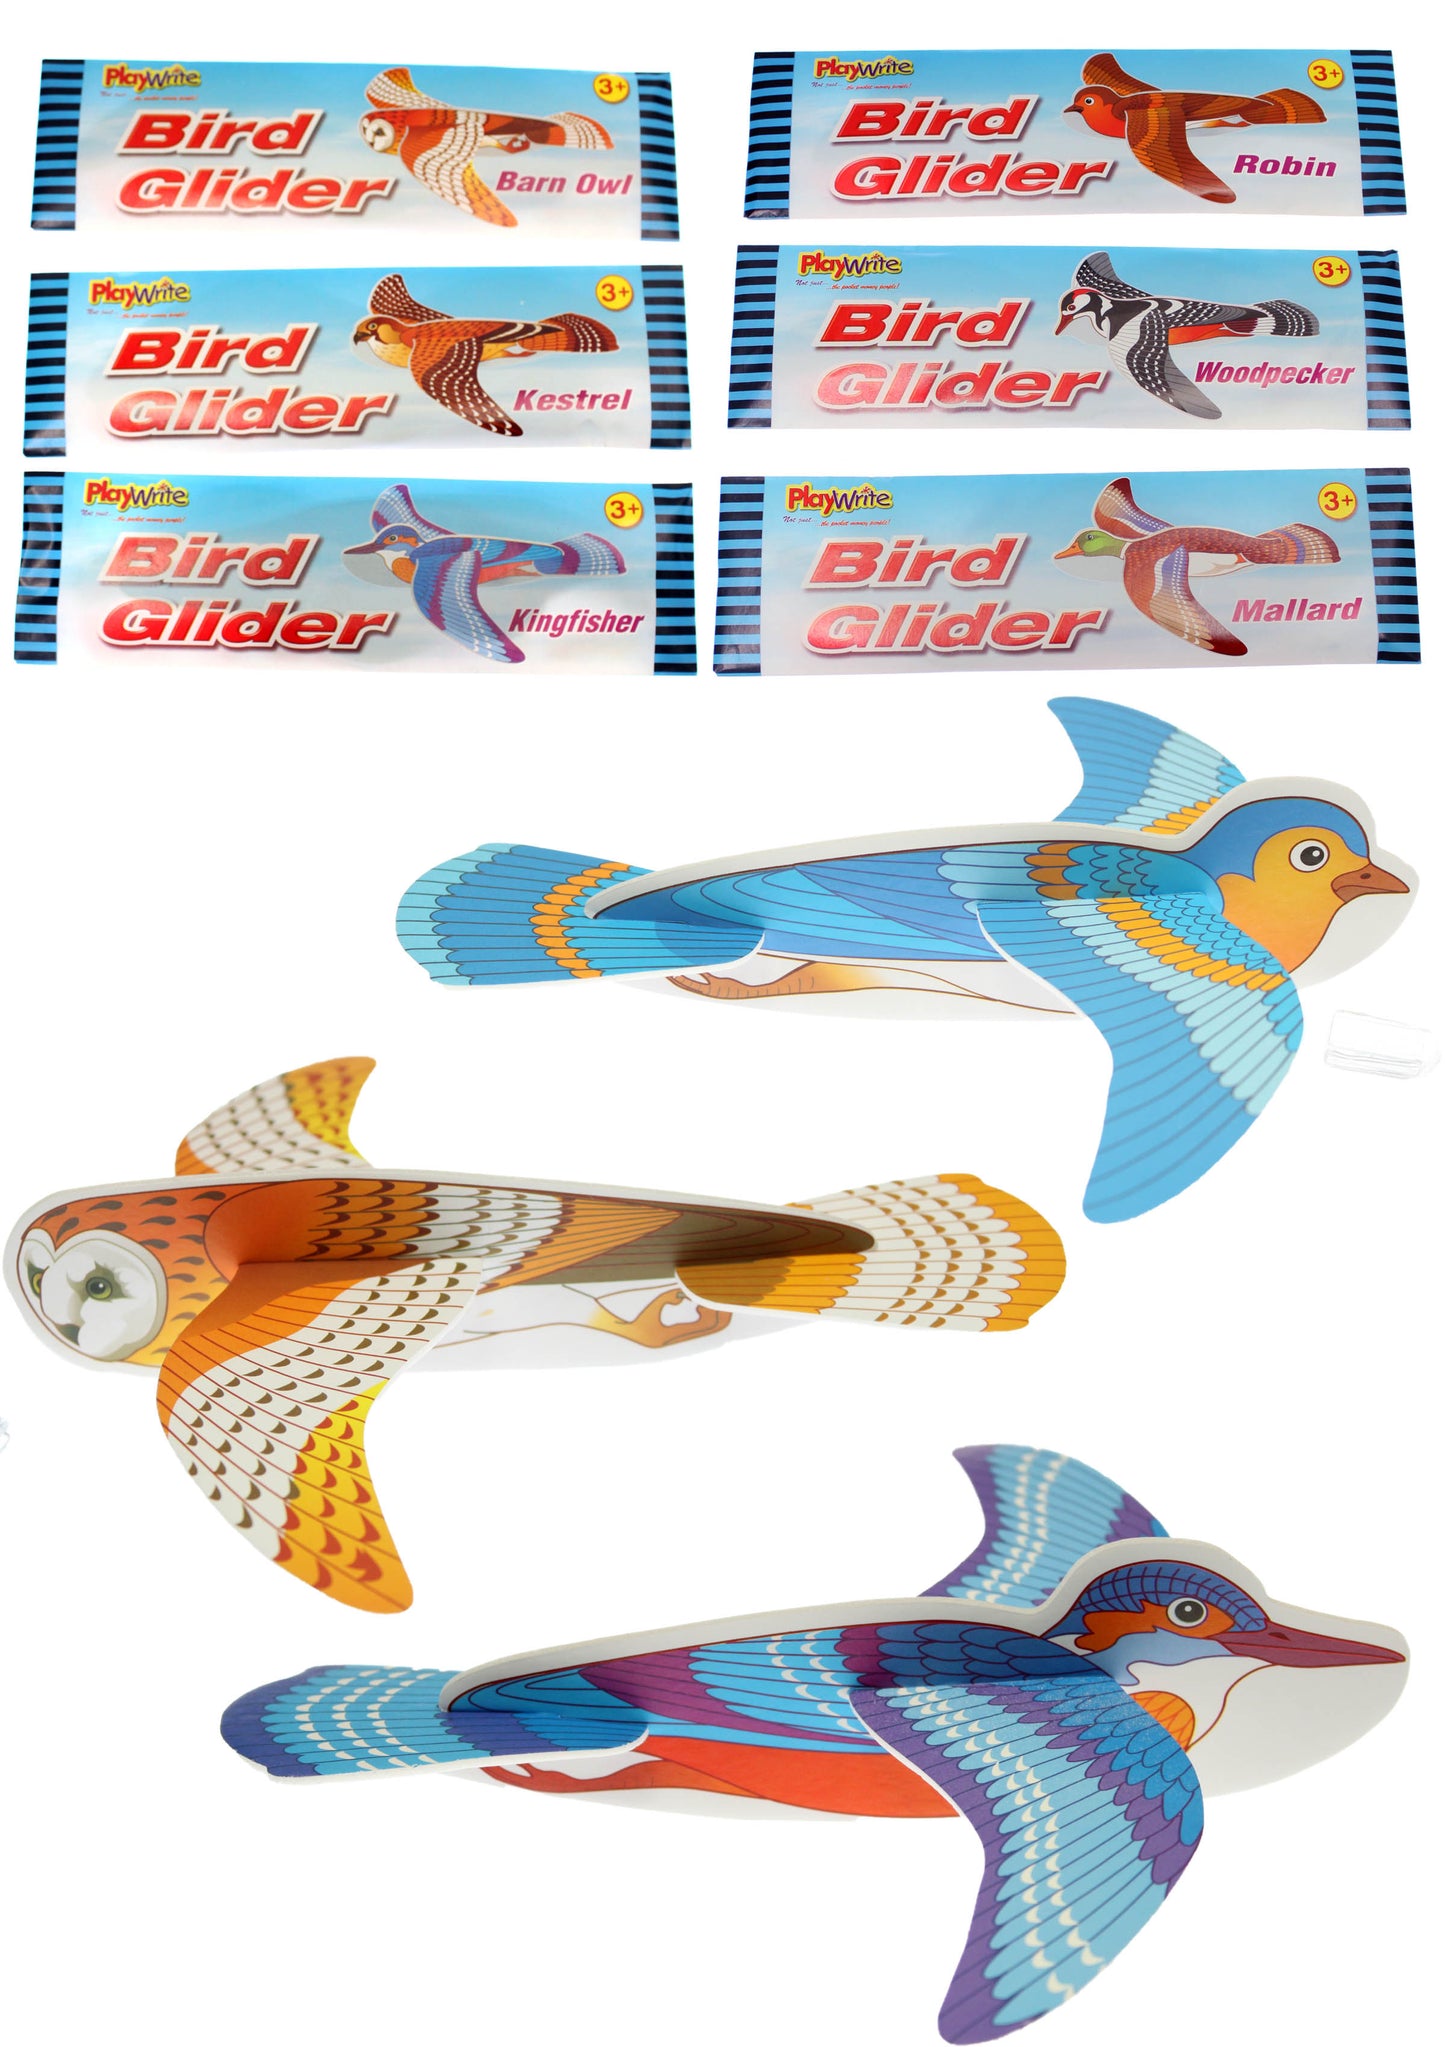 Bird Glider